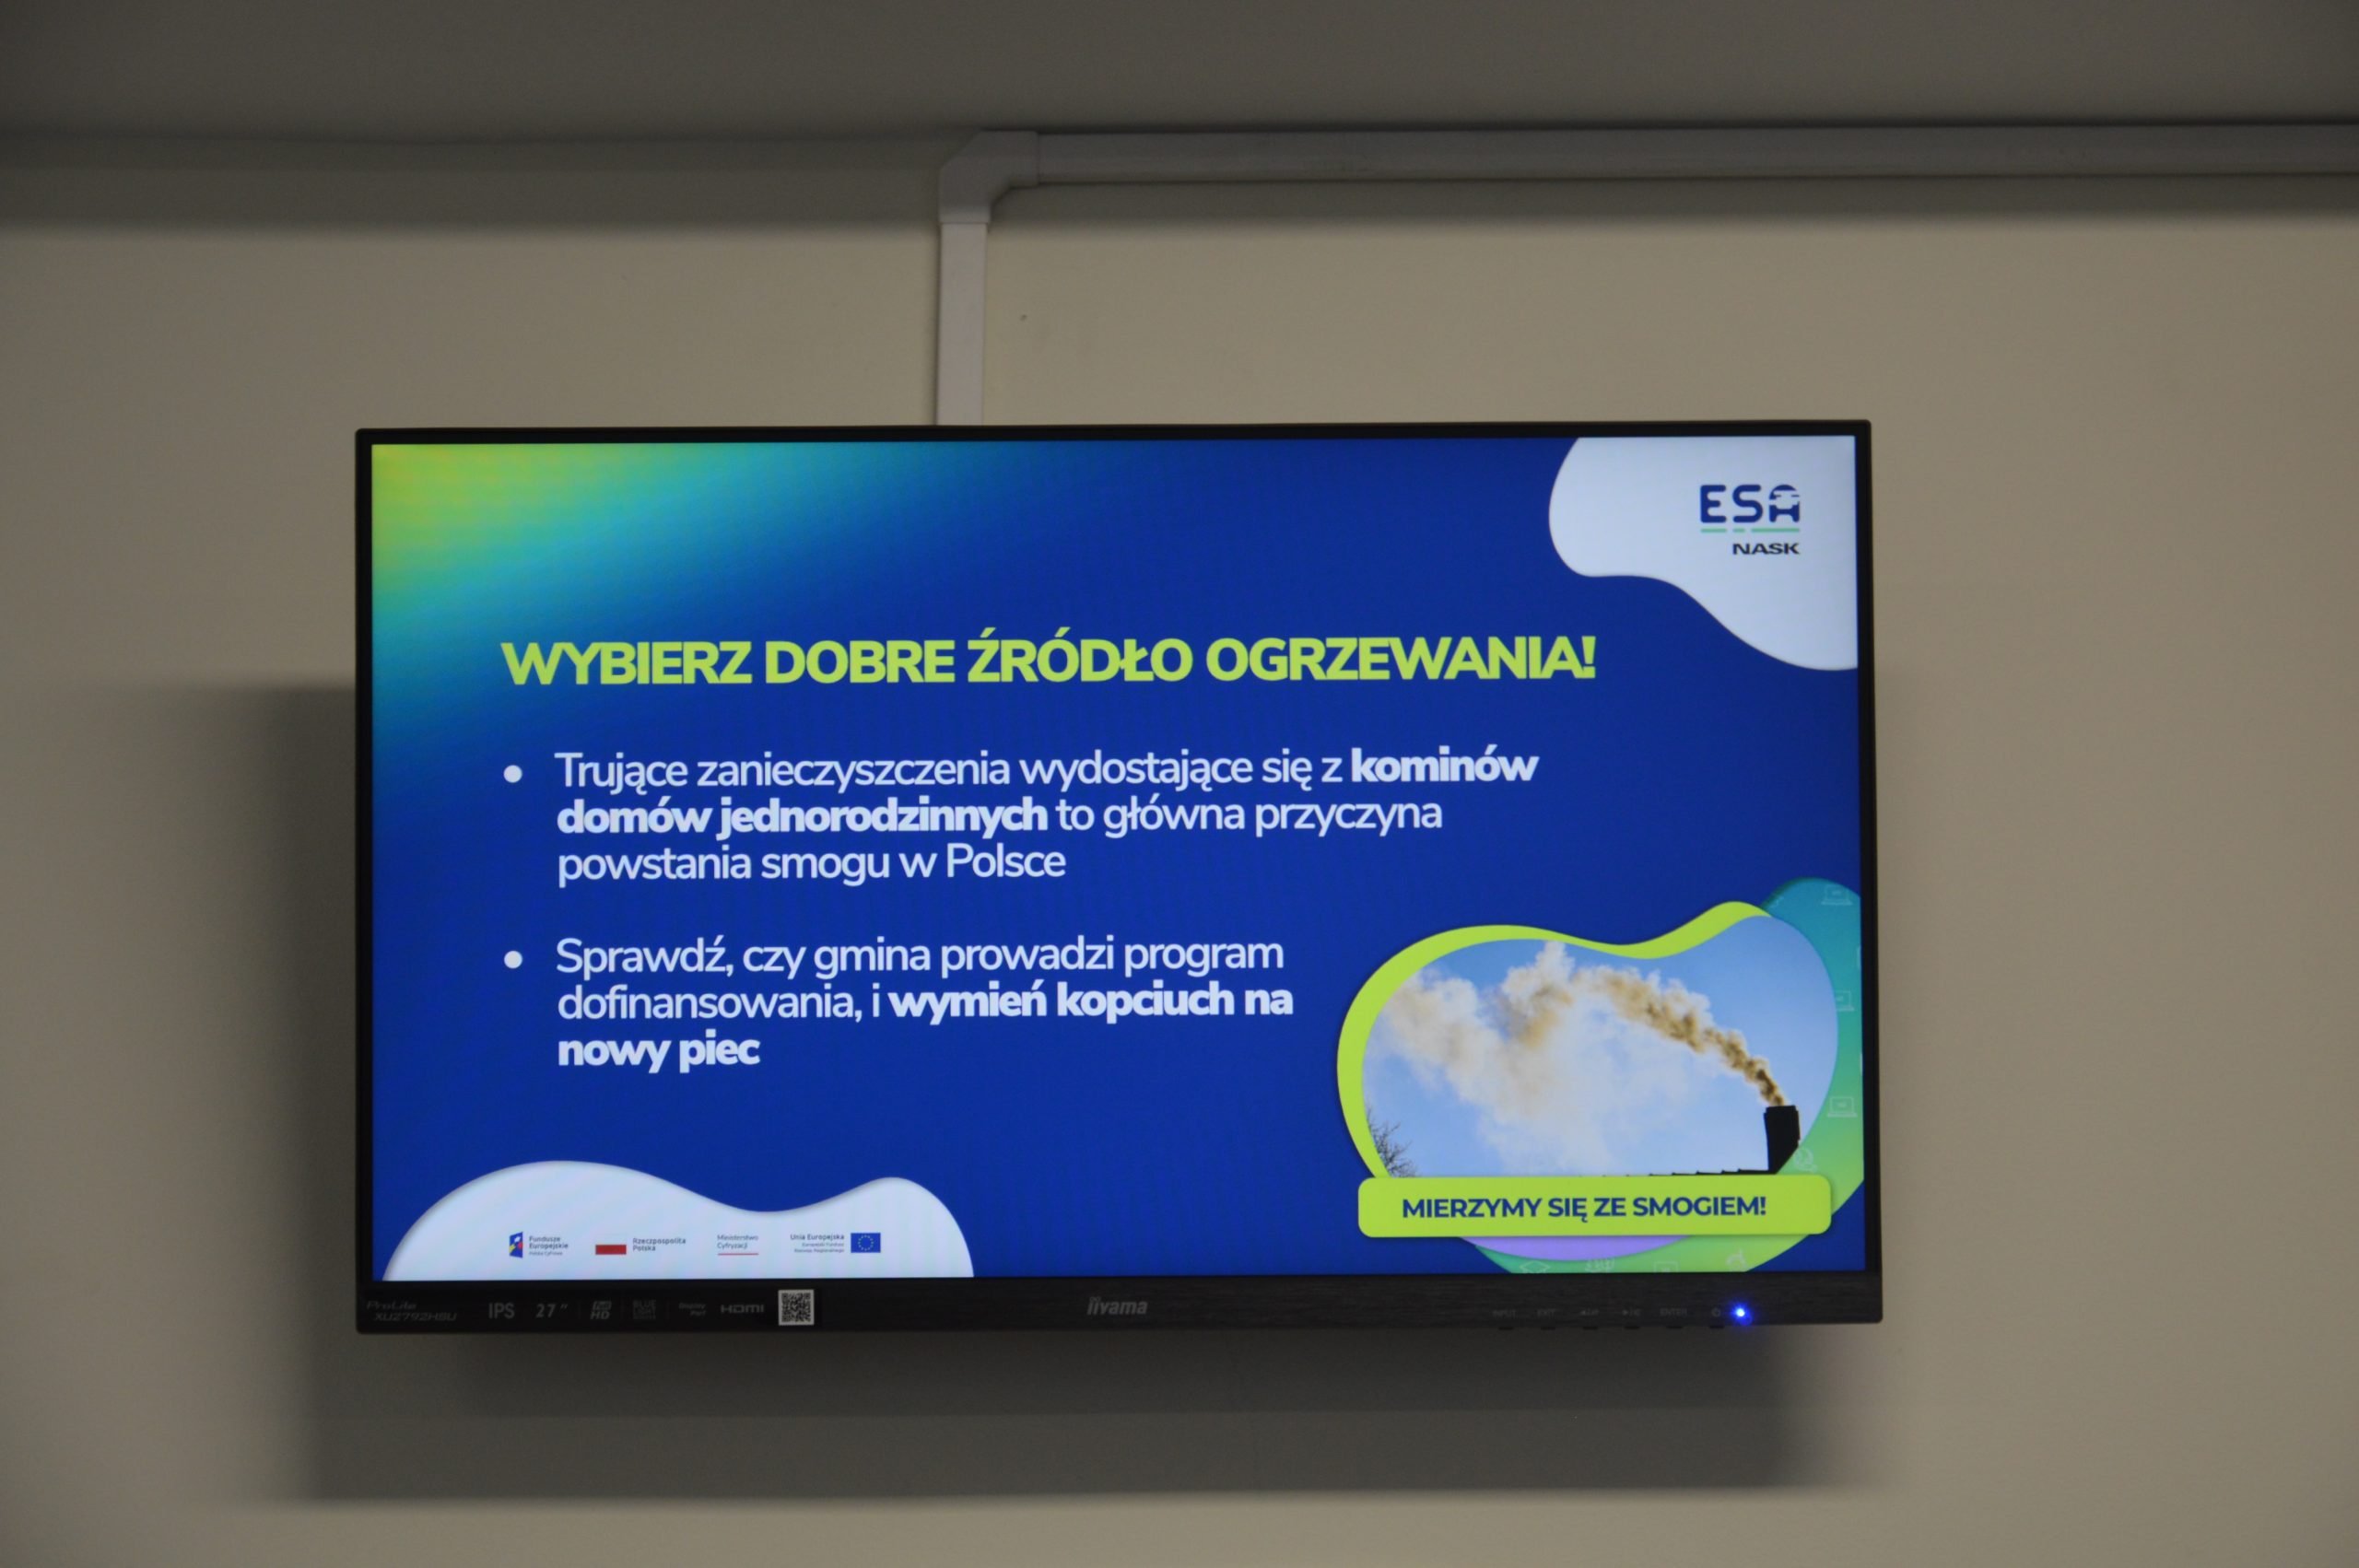 Zdjęcie przedstawia ekran wraz z informacjami dotyczącymi czystości powietrza, który szkoła w Trzebuni wygrała w konkursie organizowanym w ramach projektu Edukacyjnej Sieci Antysmogowej (ESA), realizowanym przez NASK – Państwowy Instytut Badawczy „Mierzymy się ze smogiem”.